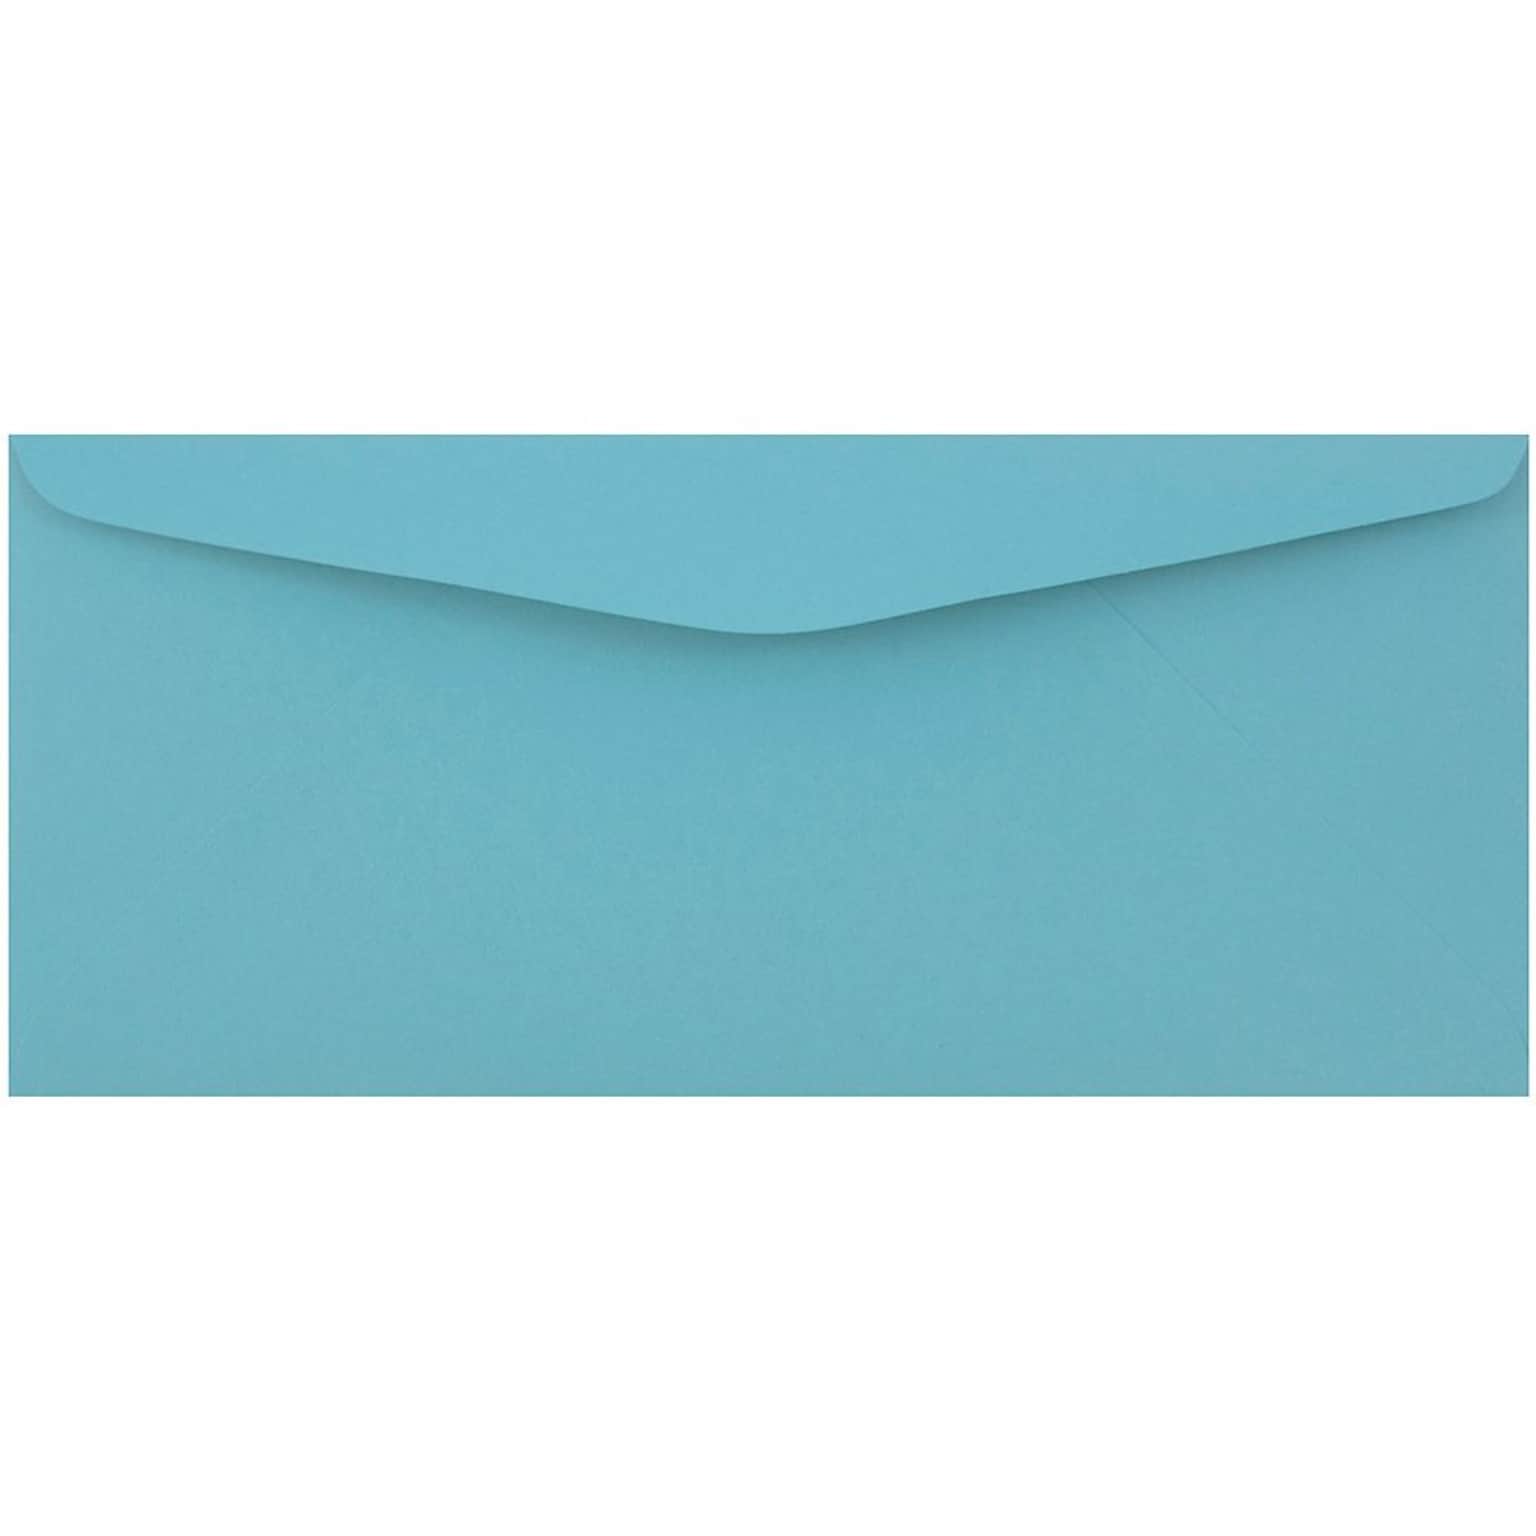 JAM Paper #9 Business Envelope, 3 7/8 x 8 7/8, Blue, 50/Pack (1532897I)